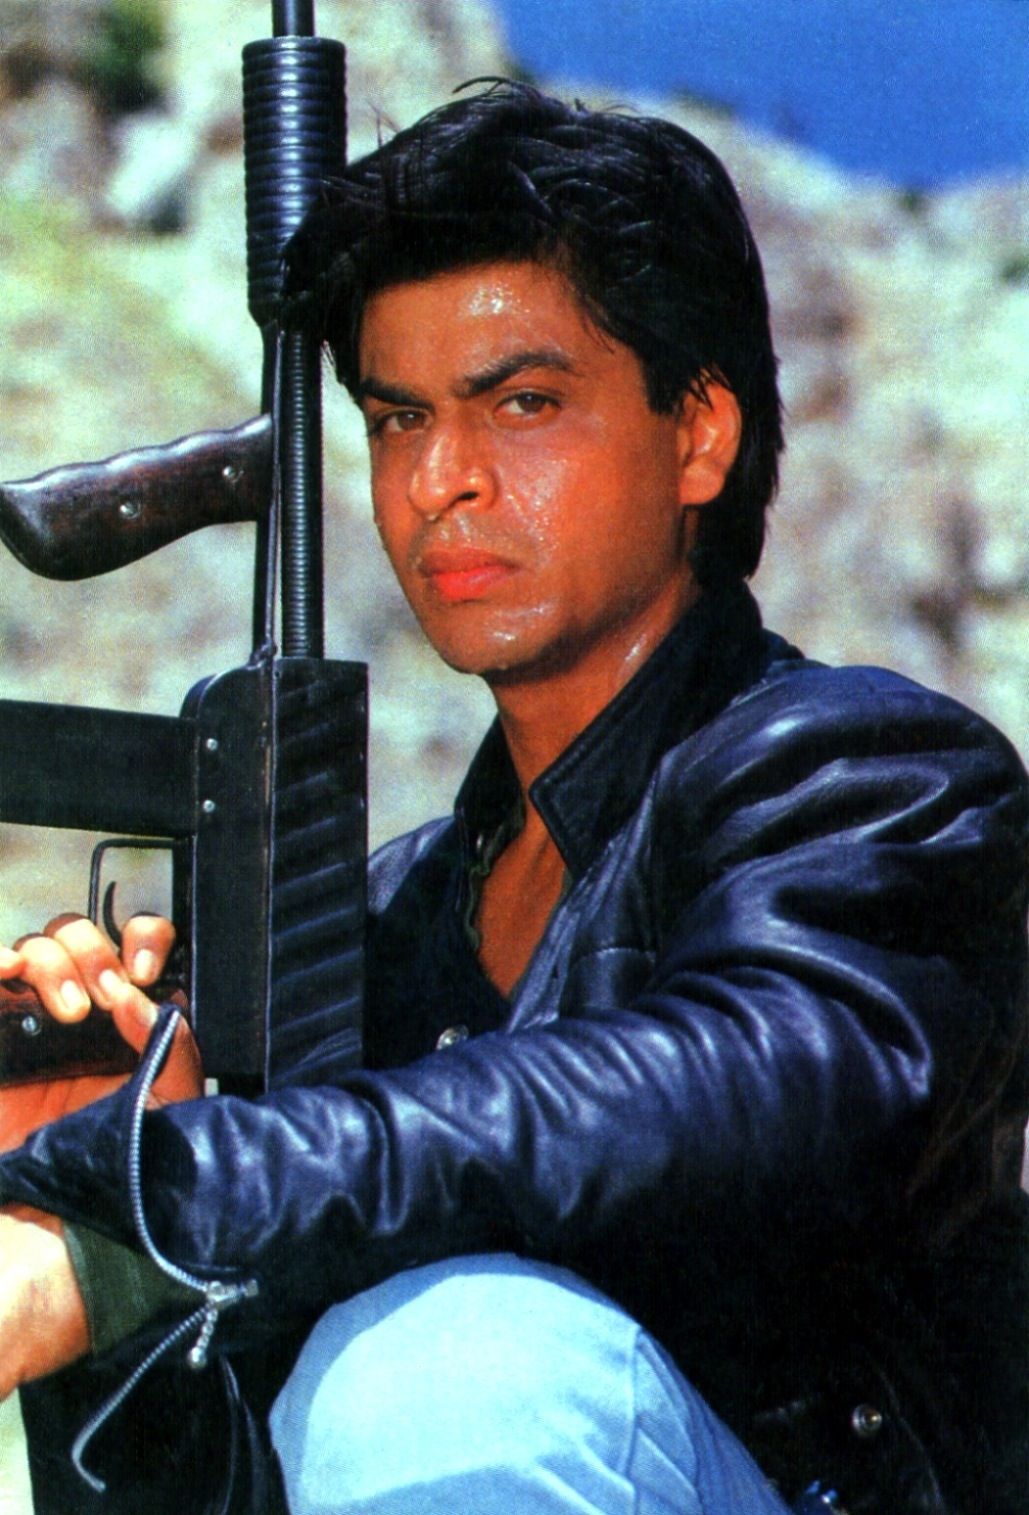 Shah Rukh Khan Arjun (1995). Shahrukh khan